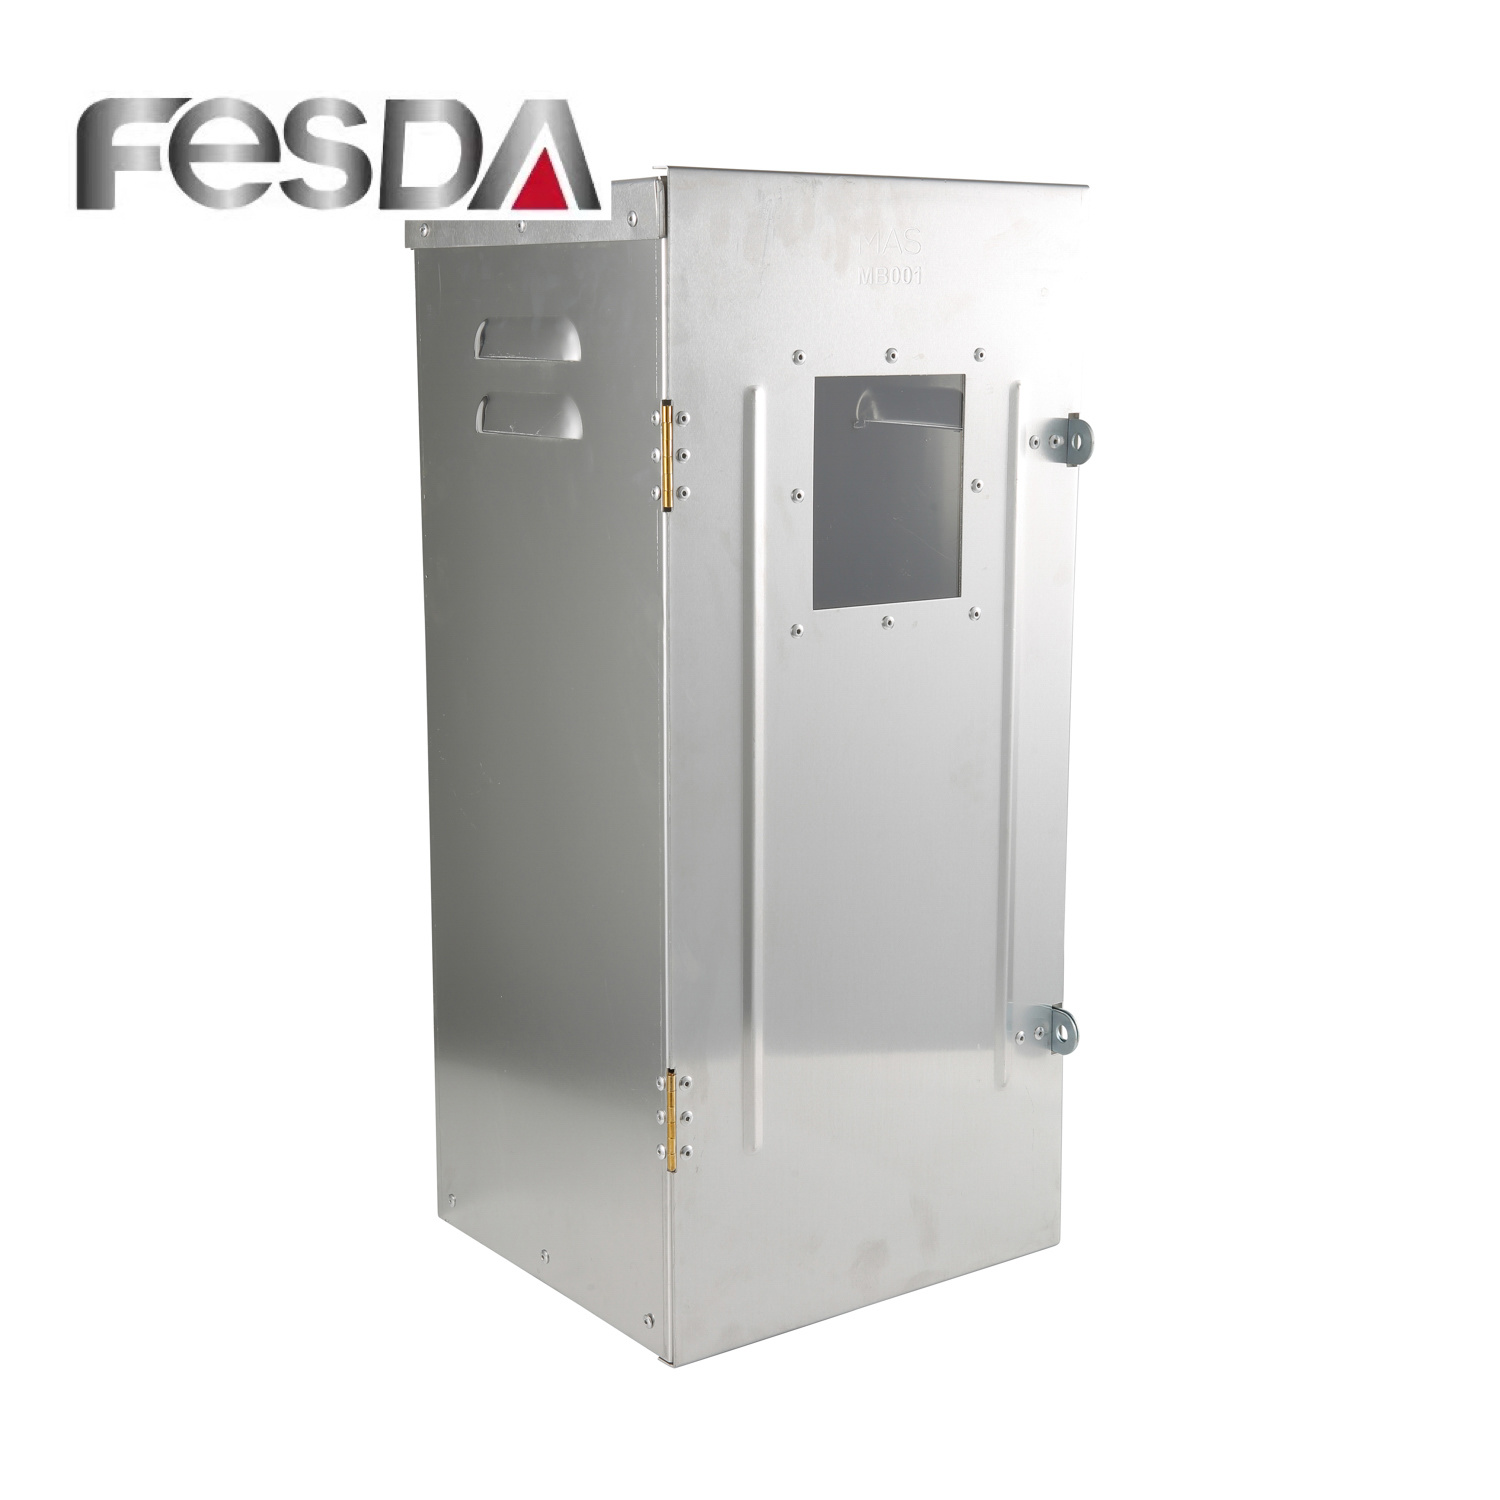 
                                 Regolatore di sicurezza Fesda scatola elettronica in alluminio                            